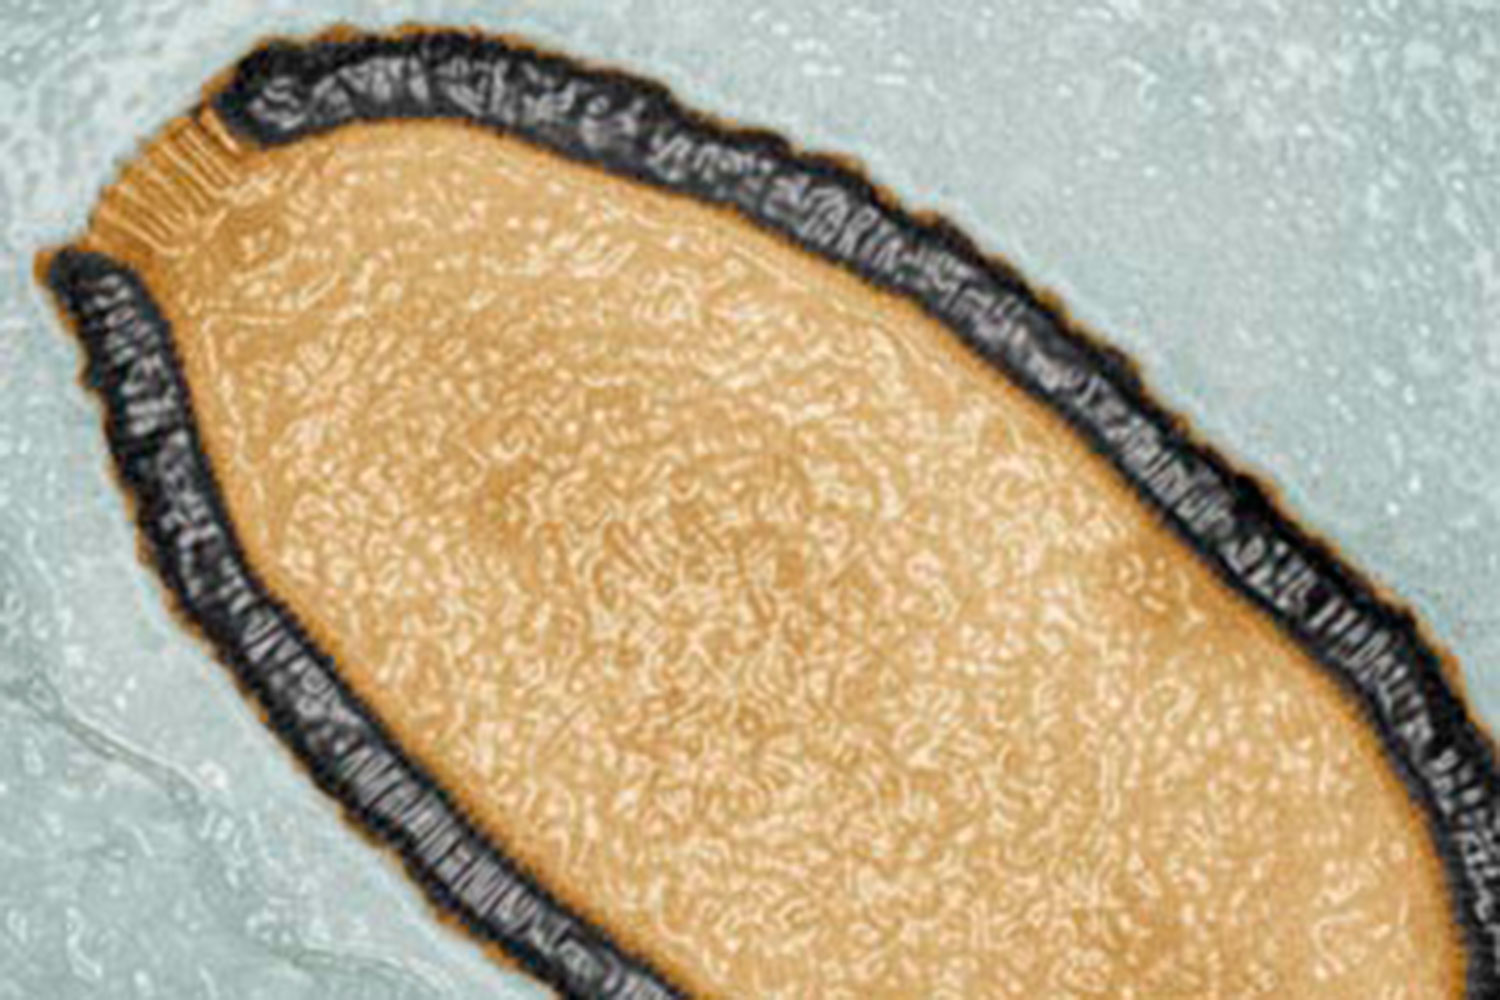 Pithovirus un nuevo virus gigante que sobrevive durante 30.000 años